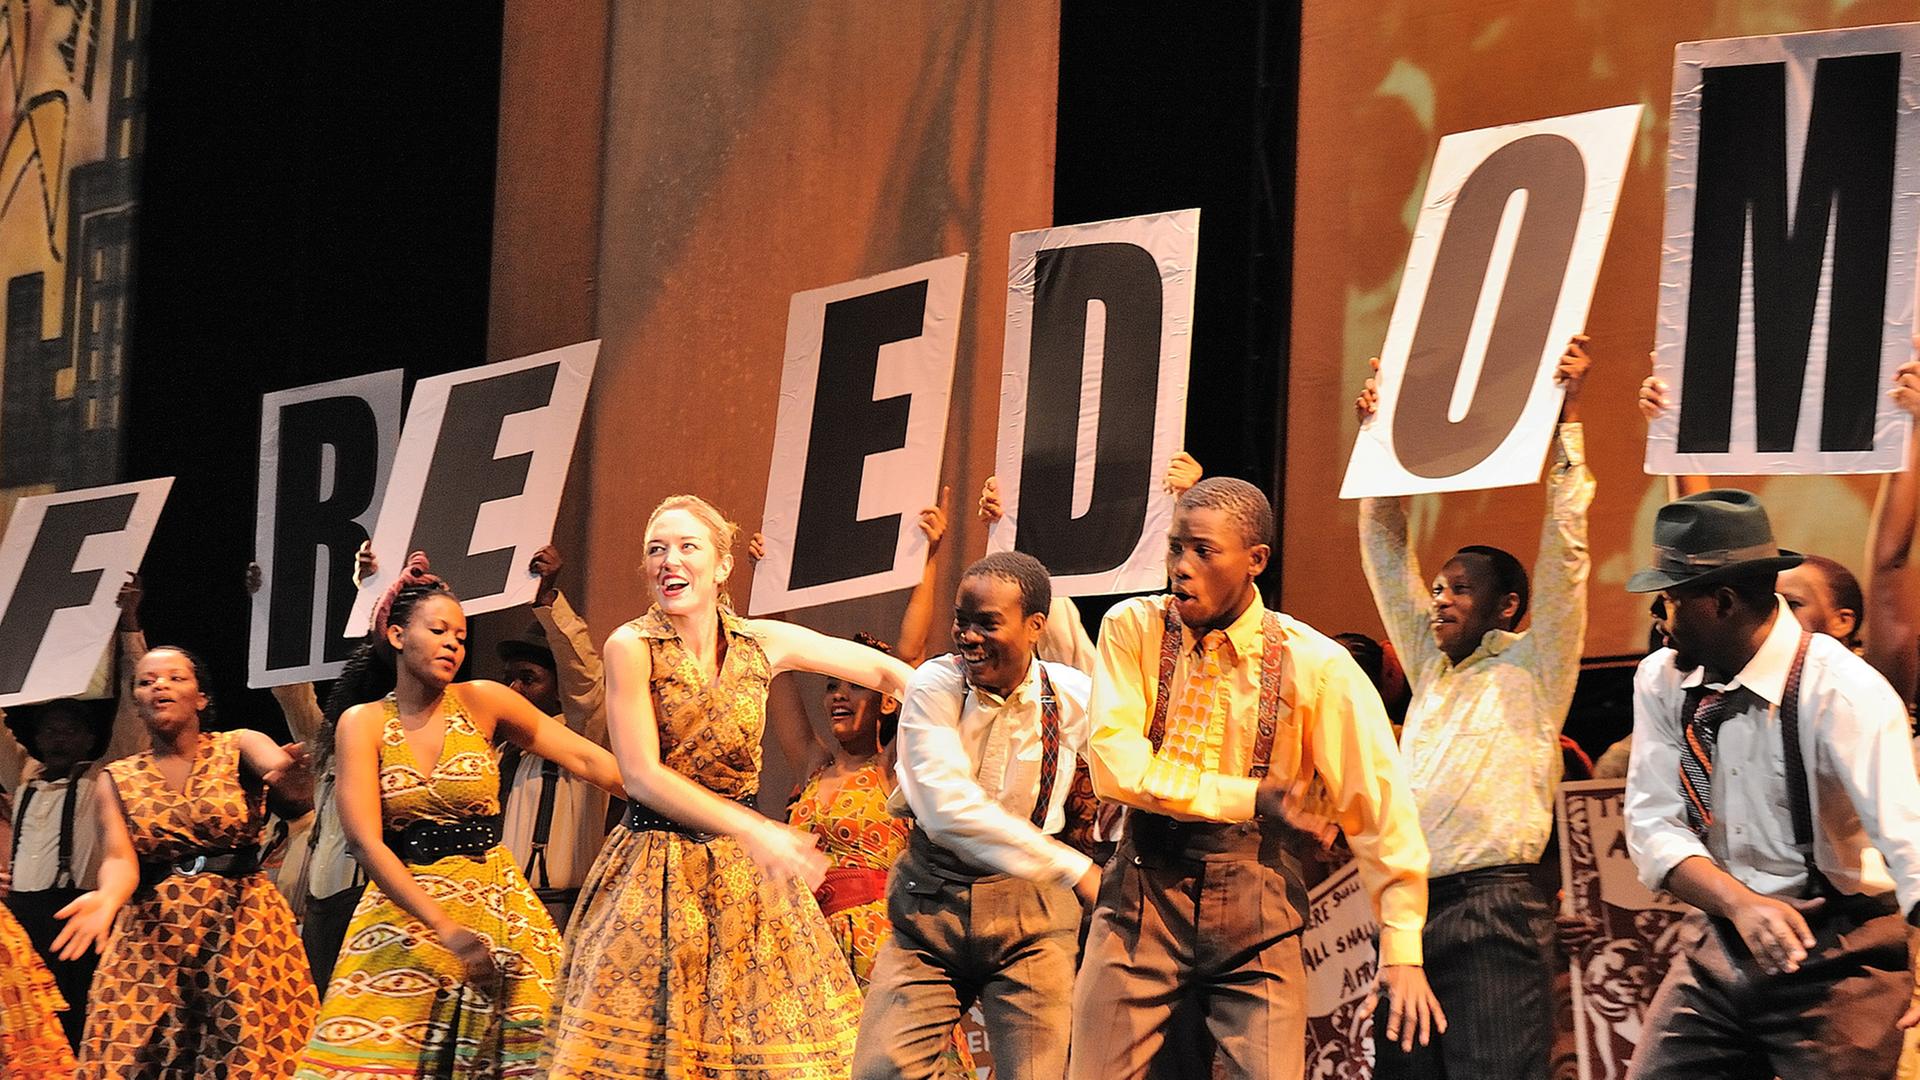 Musical "Mandela Trilogy" am Deutschen Theater München, undatiertes Probenfoto / - NUR IN ZUSAMMENHANG MIT BERICHTERSTATTUNG ÜBER DAS MUSICAL -